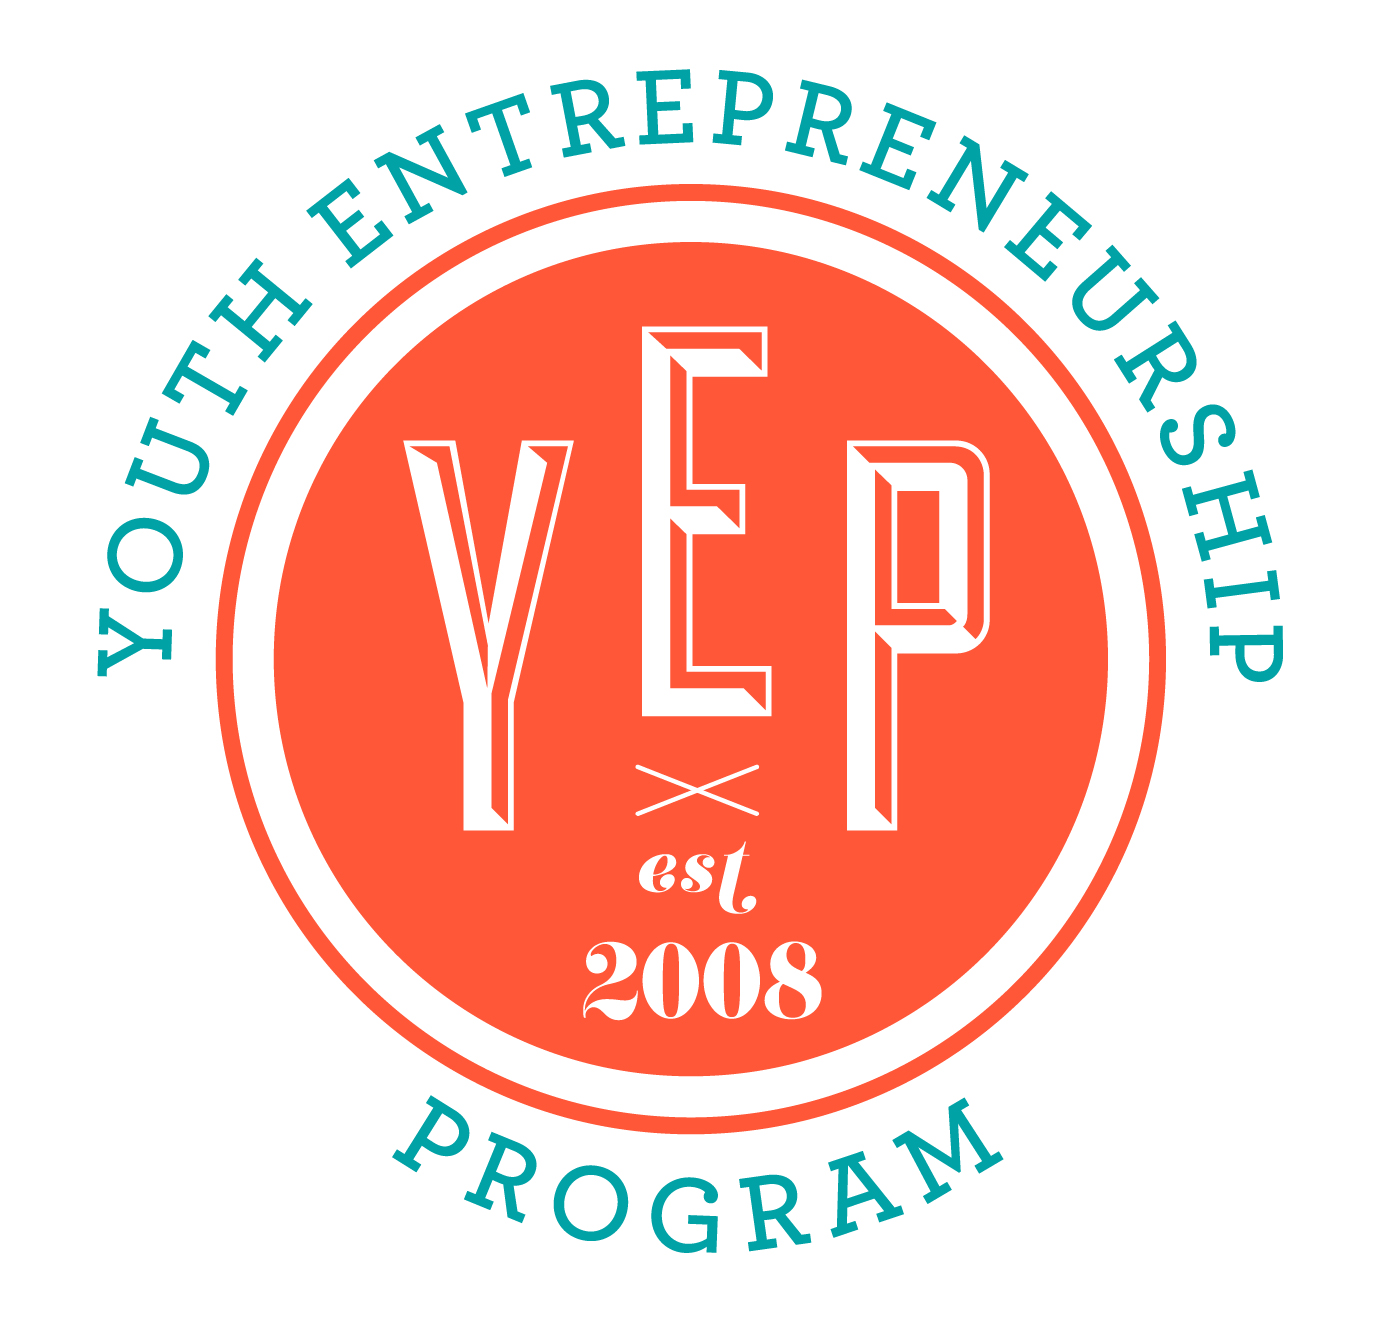 YEP logo